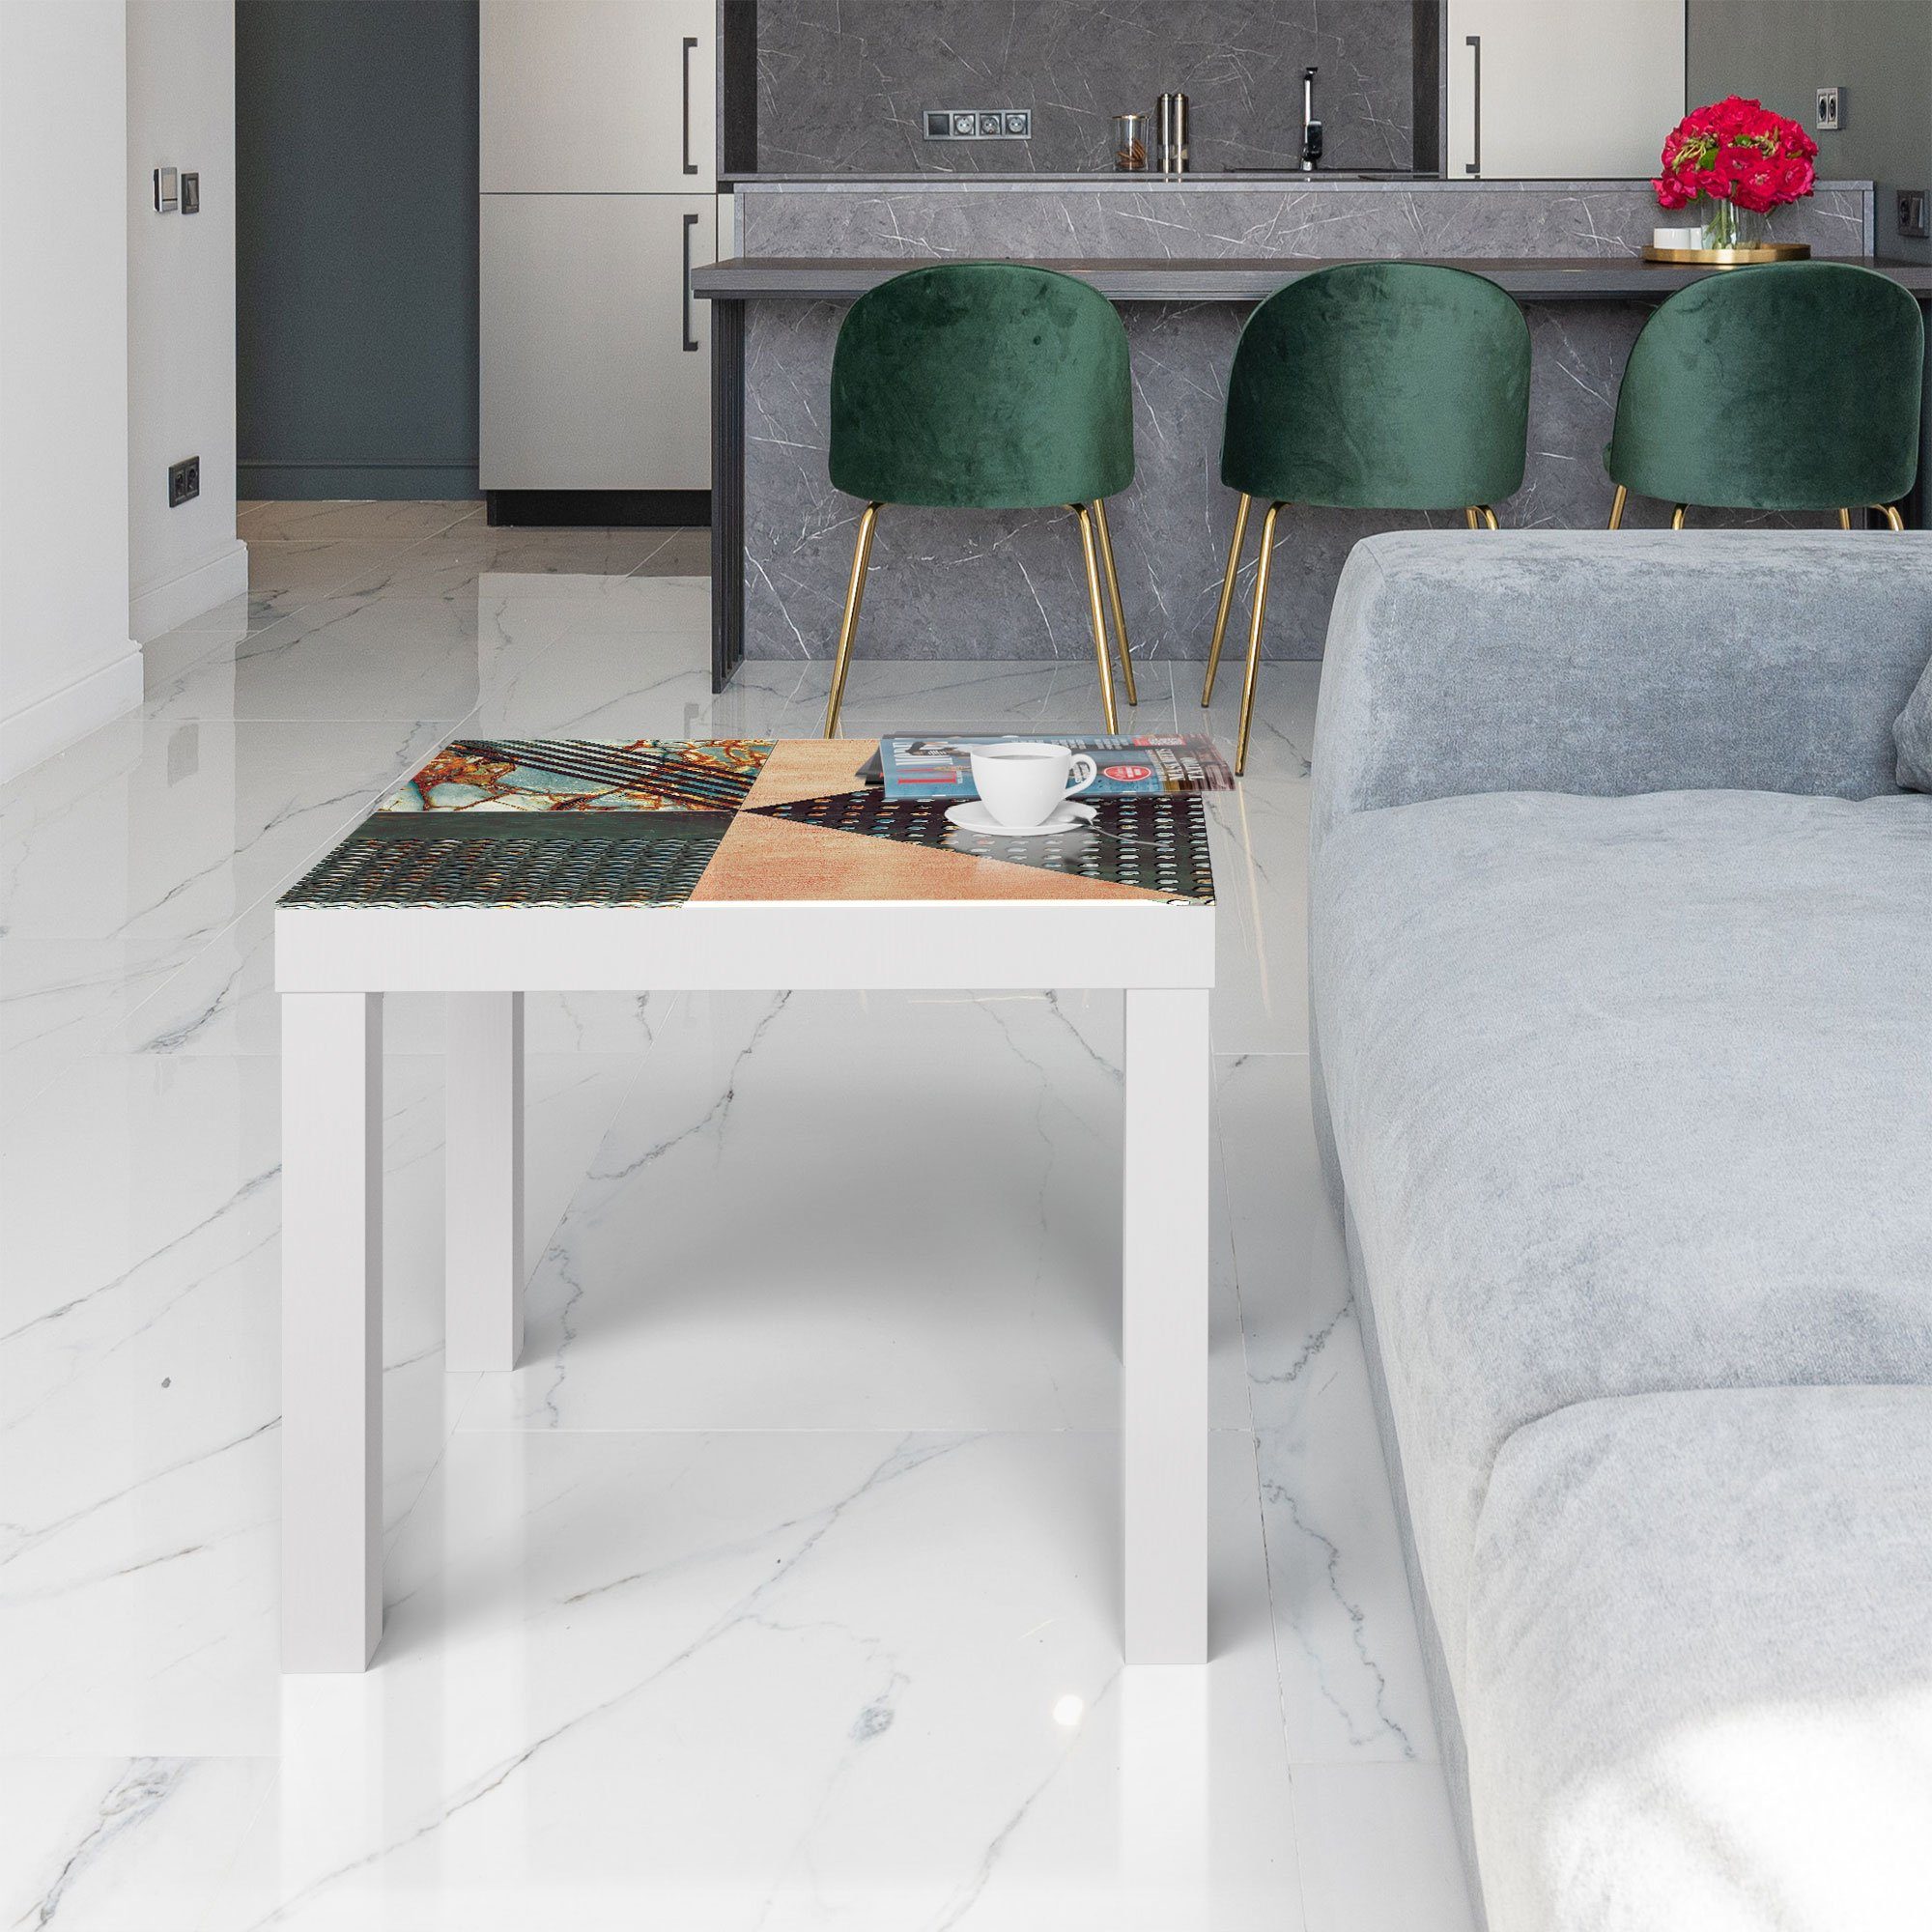 DEQORI 'Dekoratives Glastisch modern Fliesendesign', Weiß Couchtisch Beistelltisch Glas